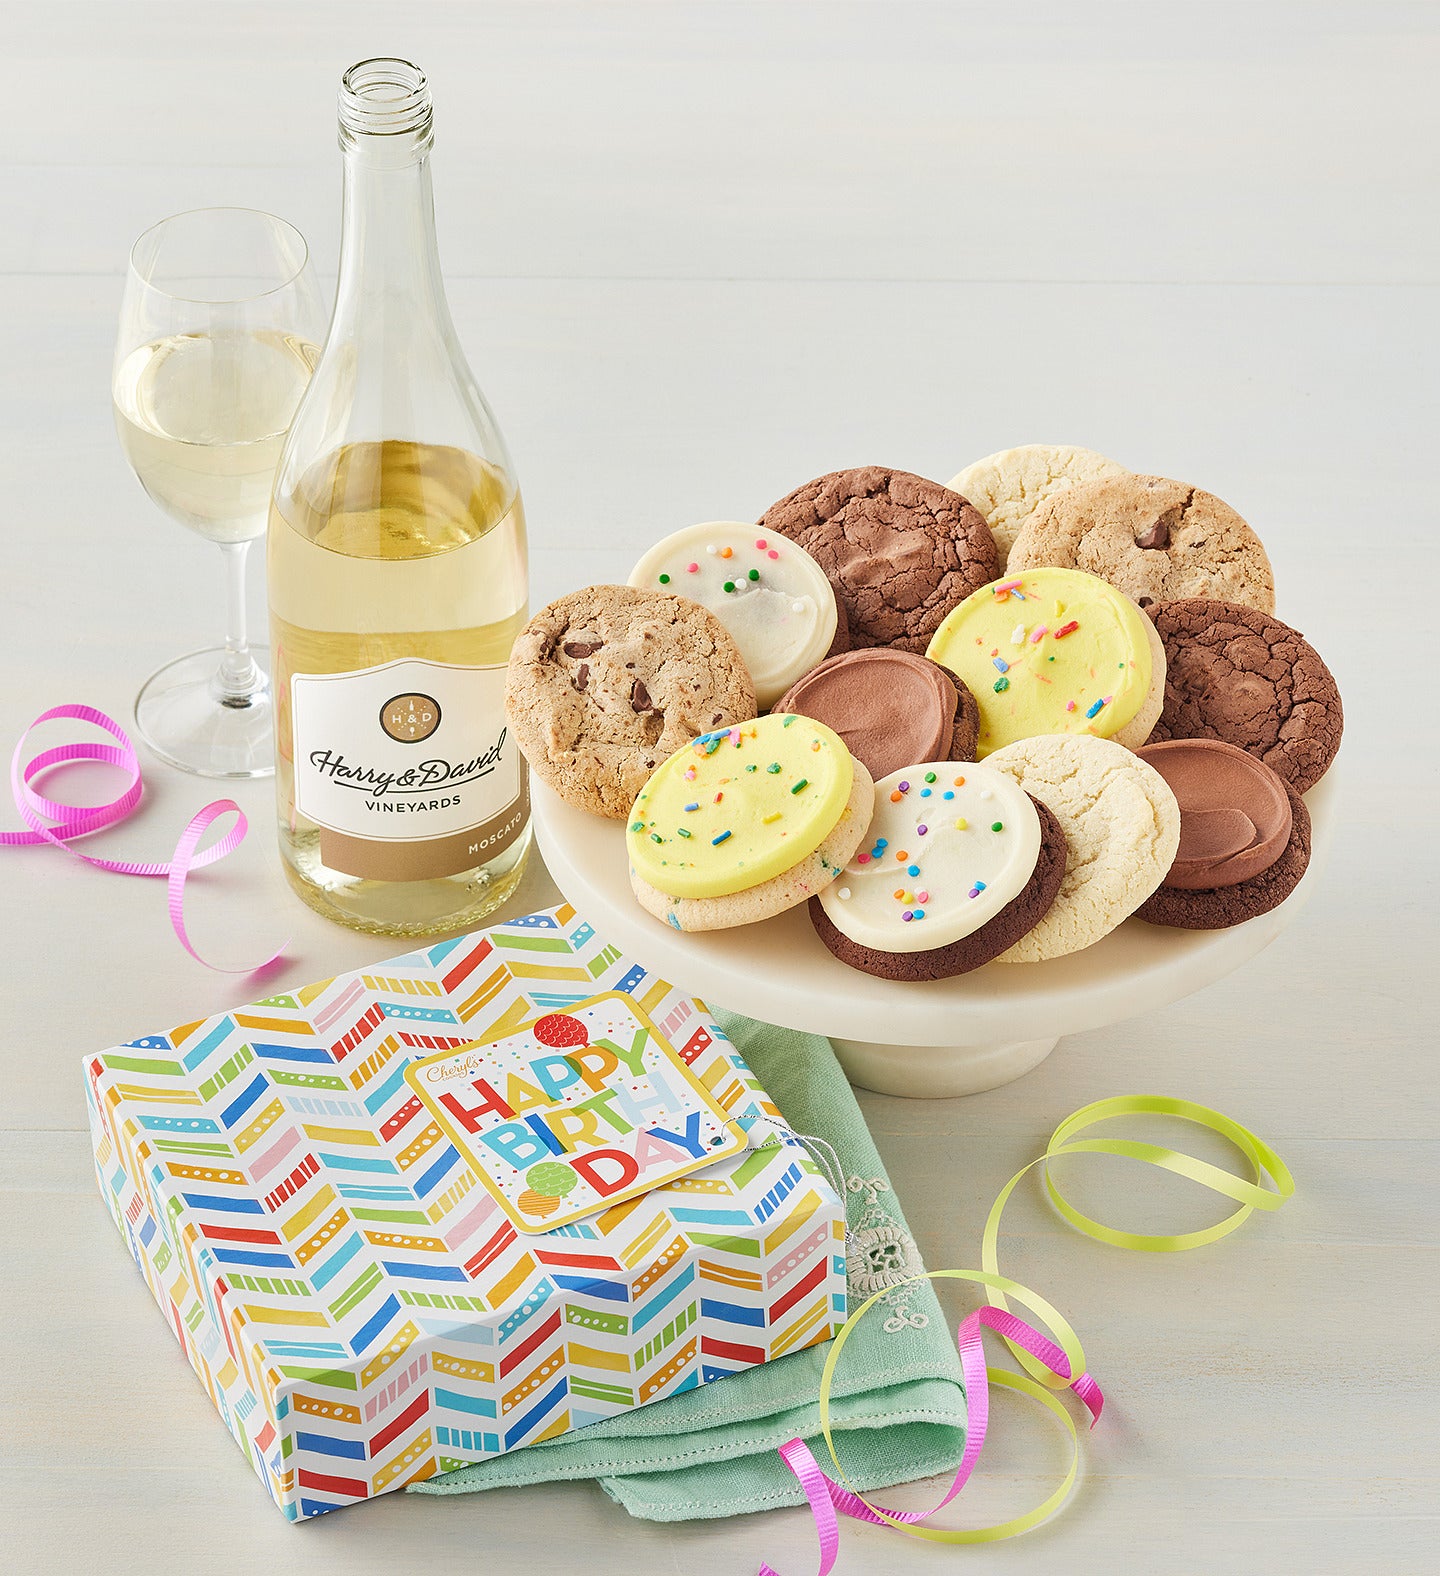 Birthday Gift Boxes | Birthday gift baskets, Birthday gifts, Savory snacks